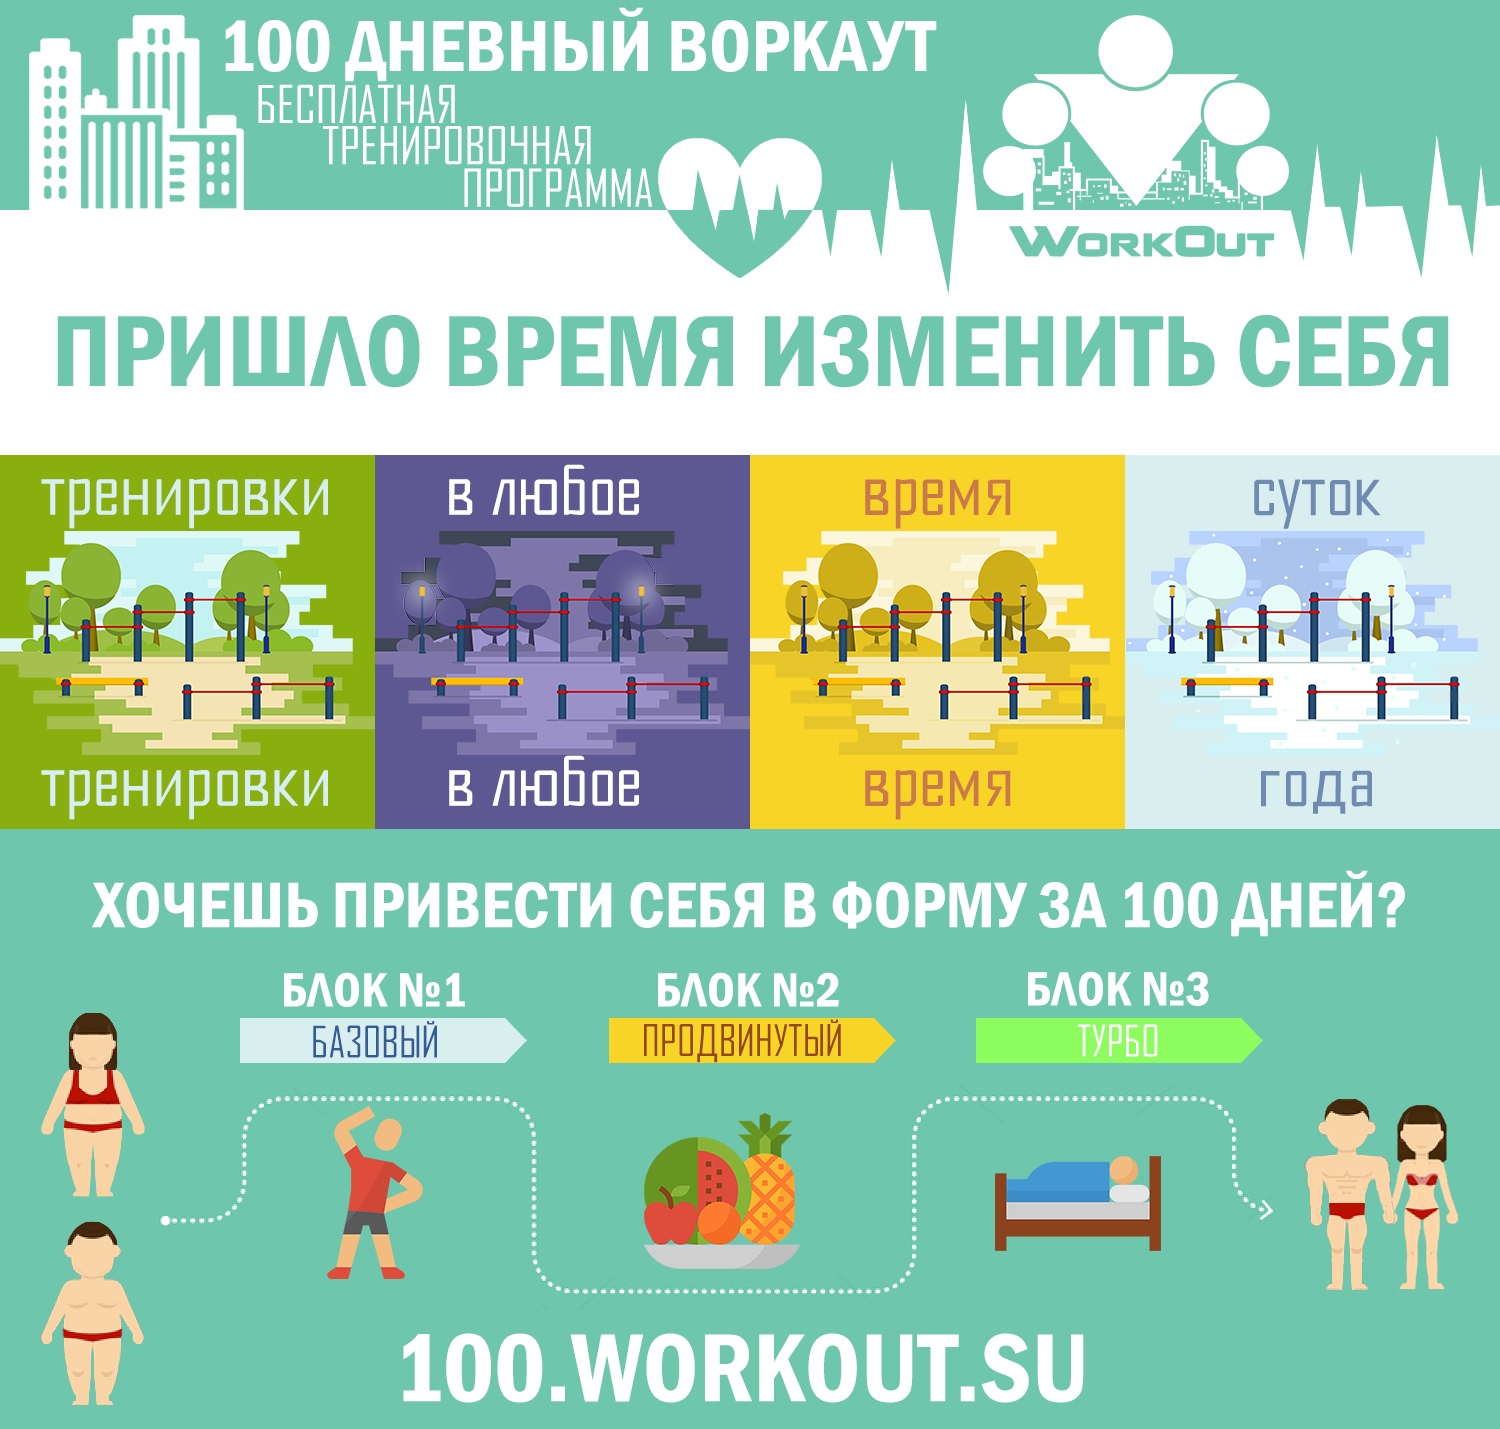 Программа «100-дневный воркаут» приглашает изменить себя » Администрация Городского округа Коломна Московской области